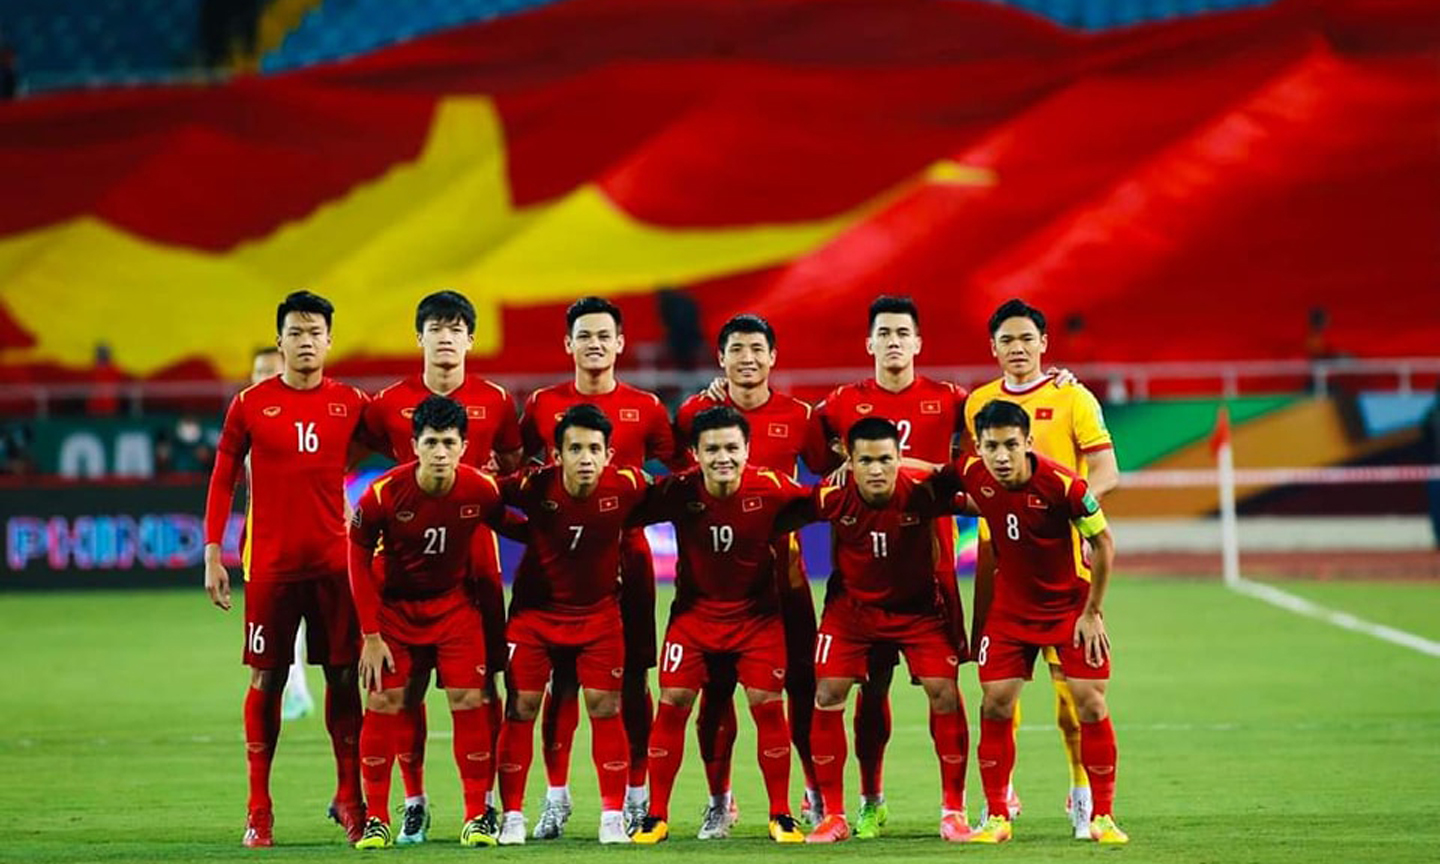 Tuyển Việt Nam sớm lọt vào vòng chung kết Asian Cup 2023 (không cần tham dự vòng loại) nhờ việc giành vé vào vòng loại thứ ba World Cup 2022. Ảnh: VFF